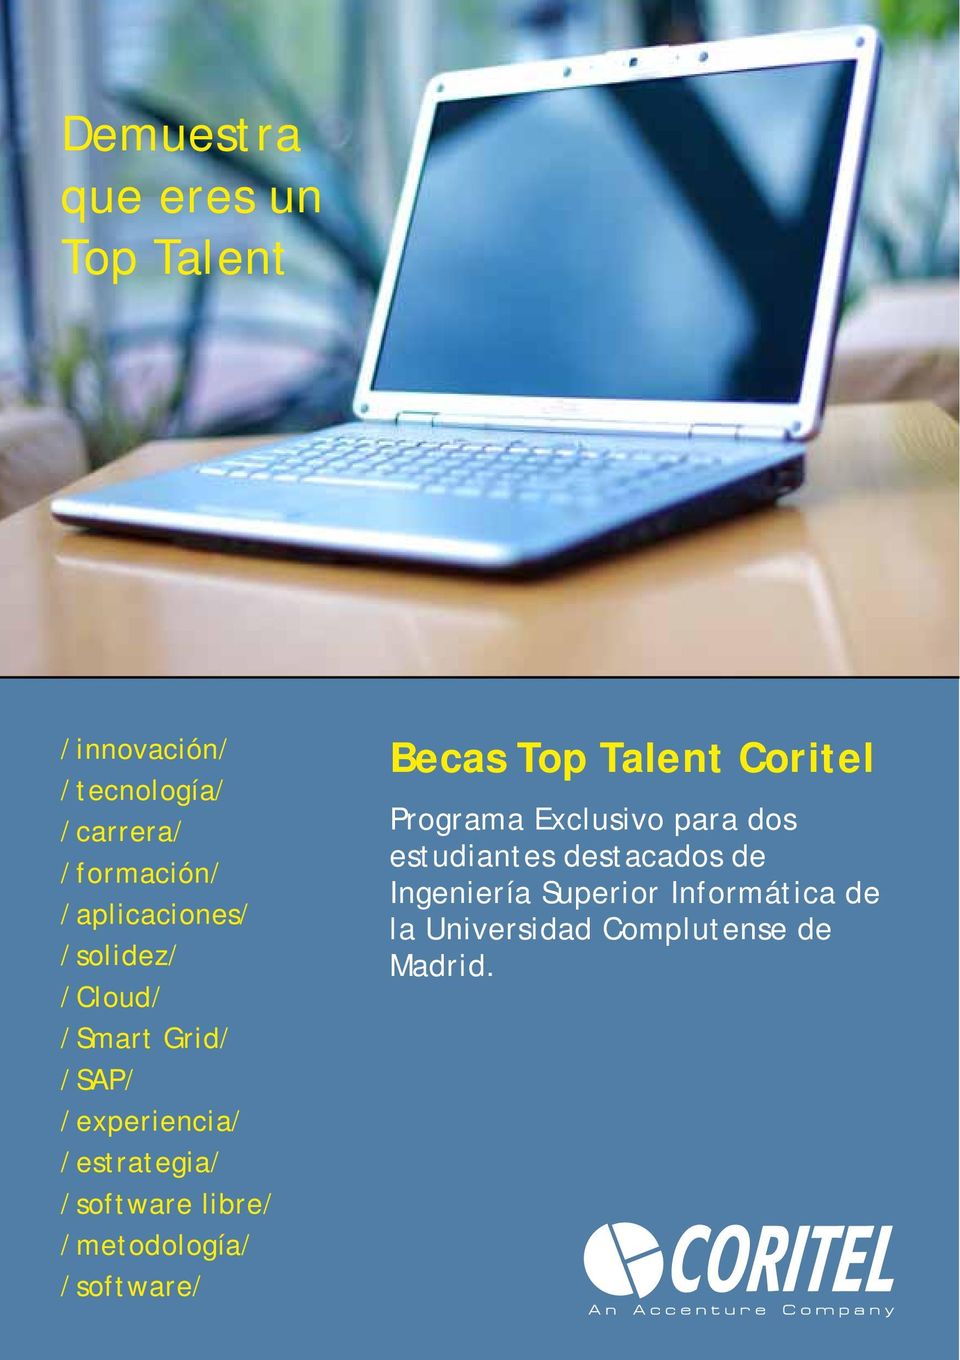 libre/ /metodología/ /software/ Becas Top Talent Coritel Programa Exclusivo para dos